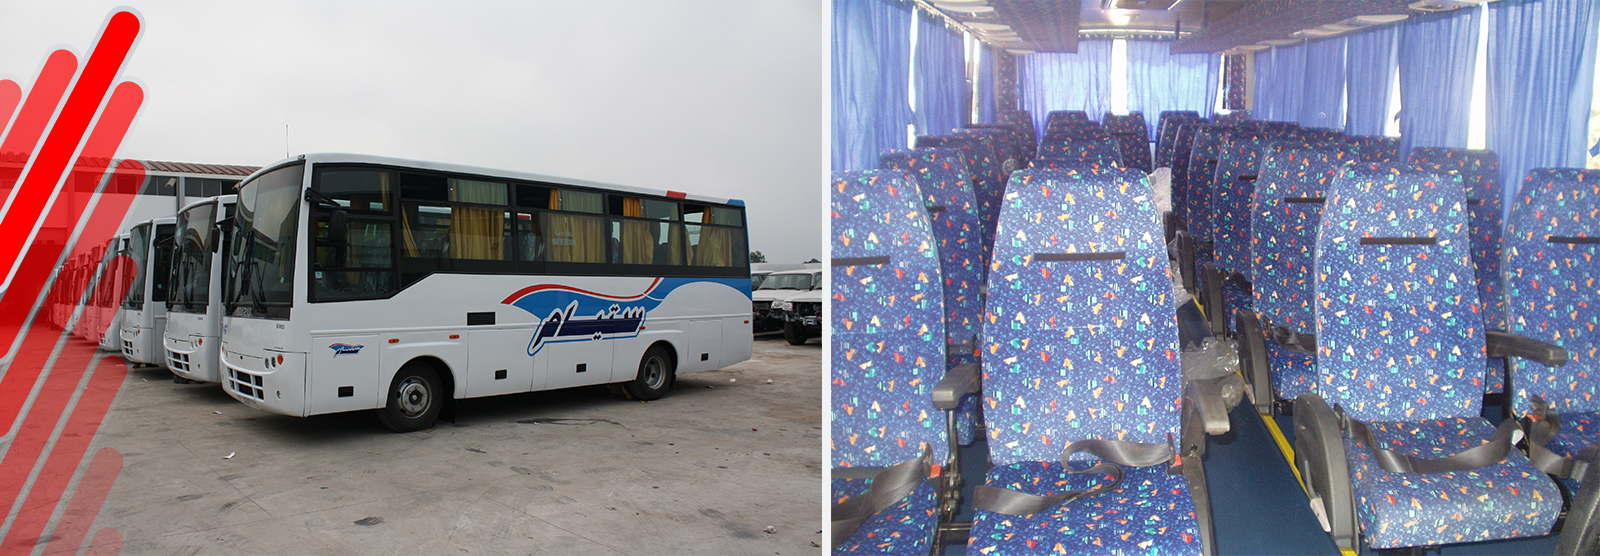 arinco - autocar & autobus